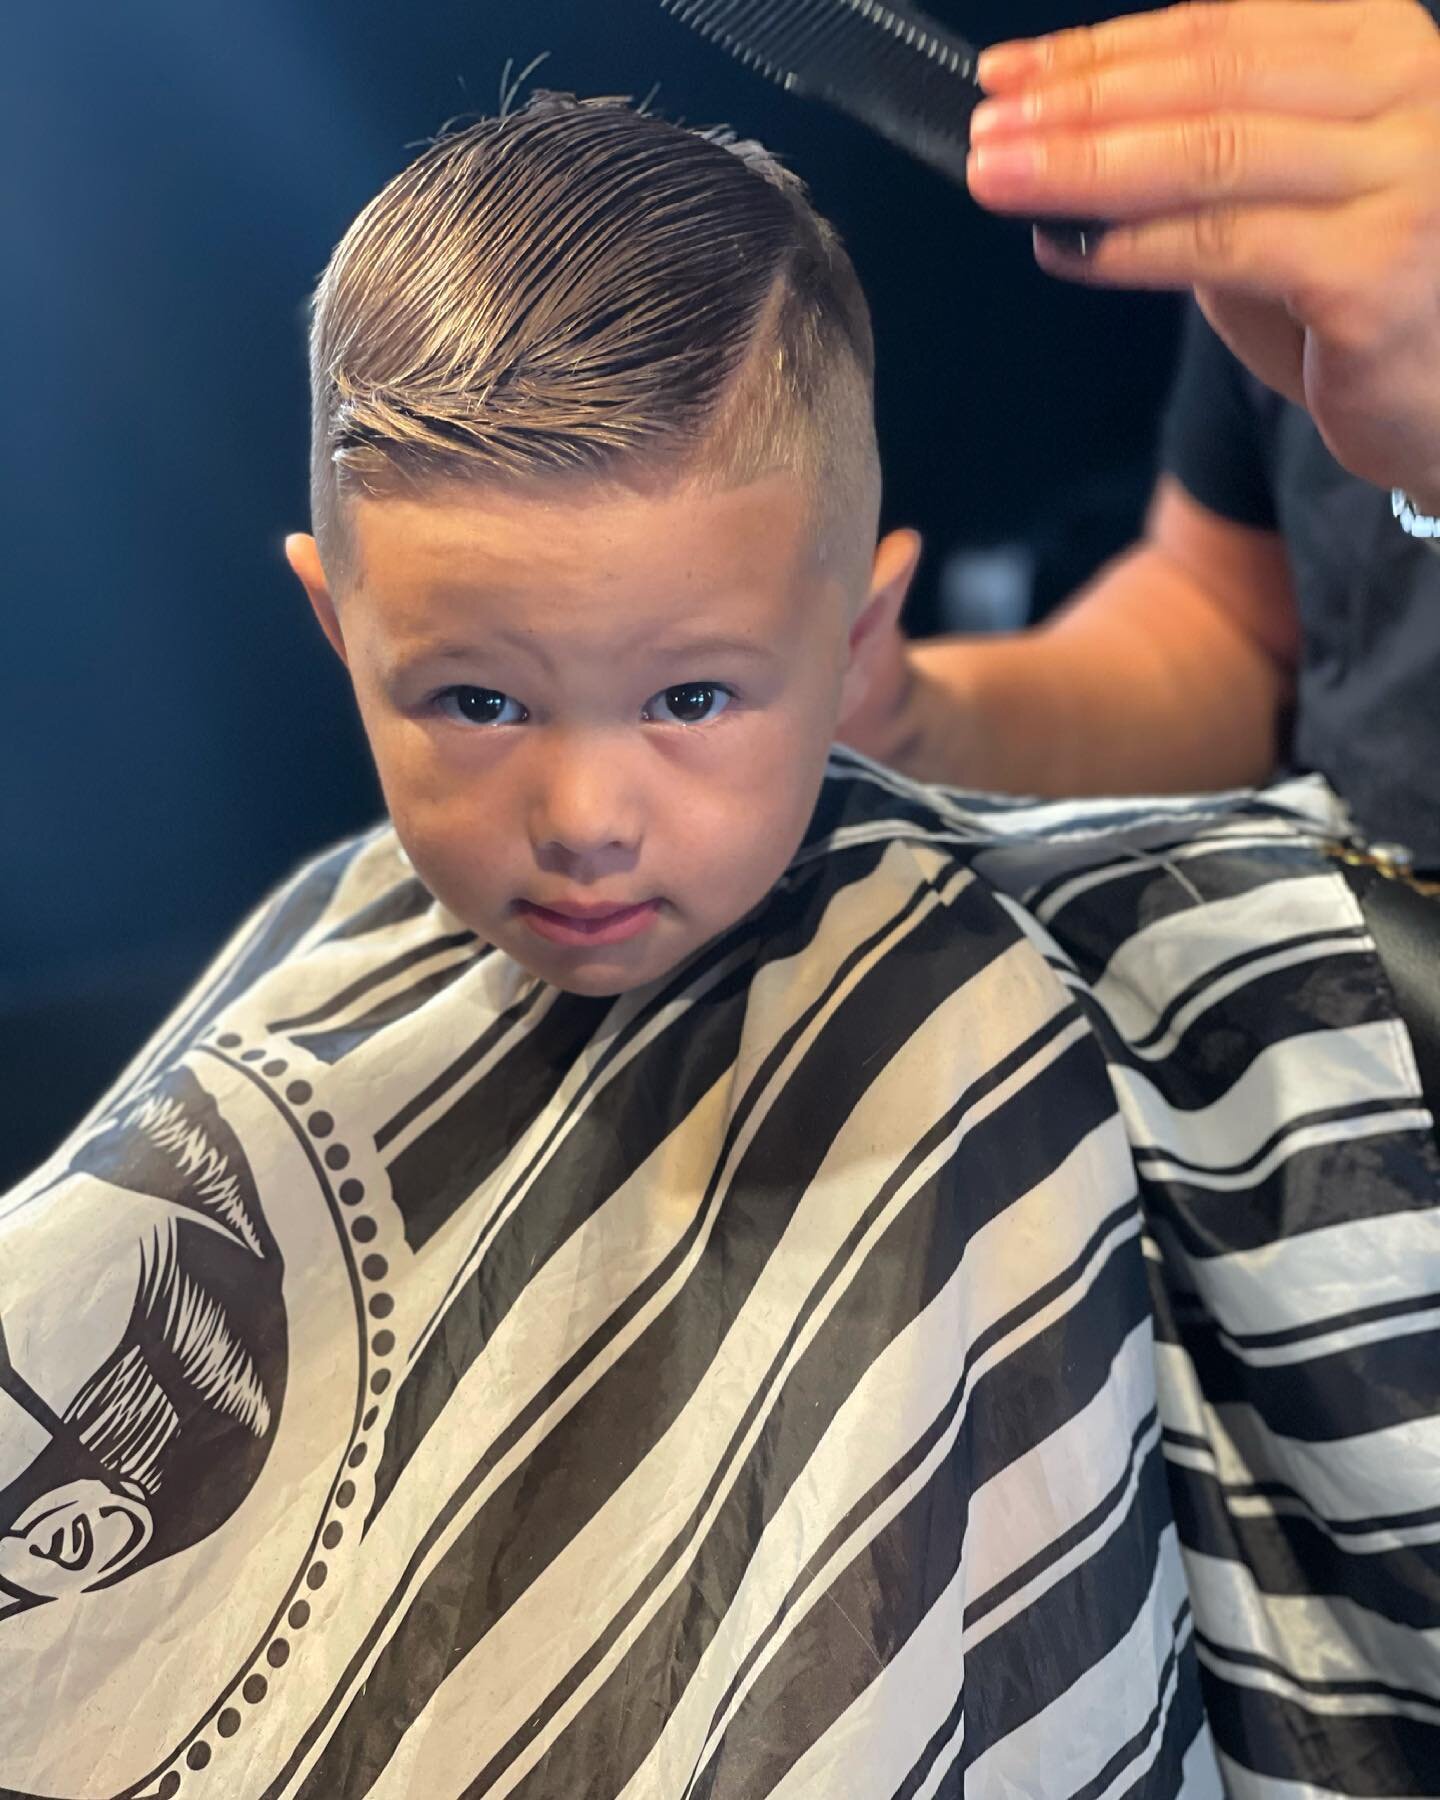 Weekend combover 😉 

#kidshairstyles 
#barber
#barbershop